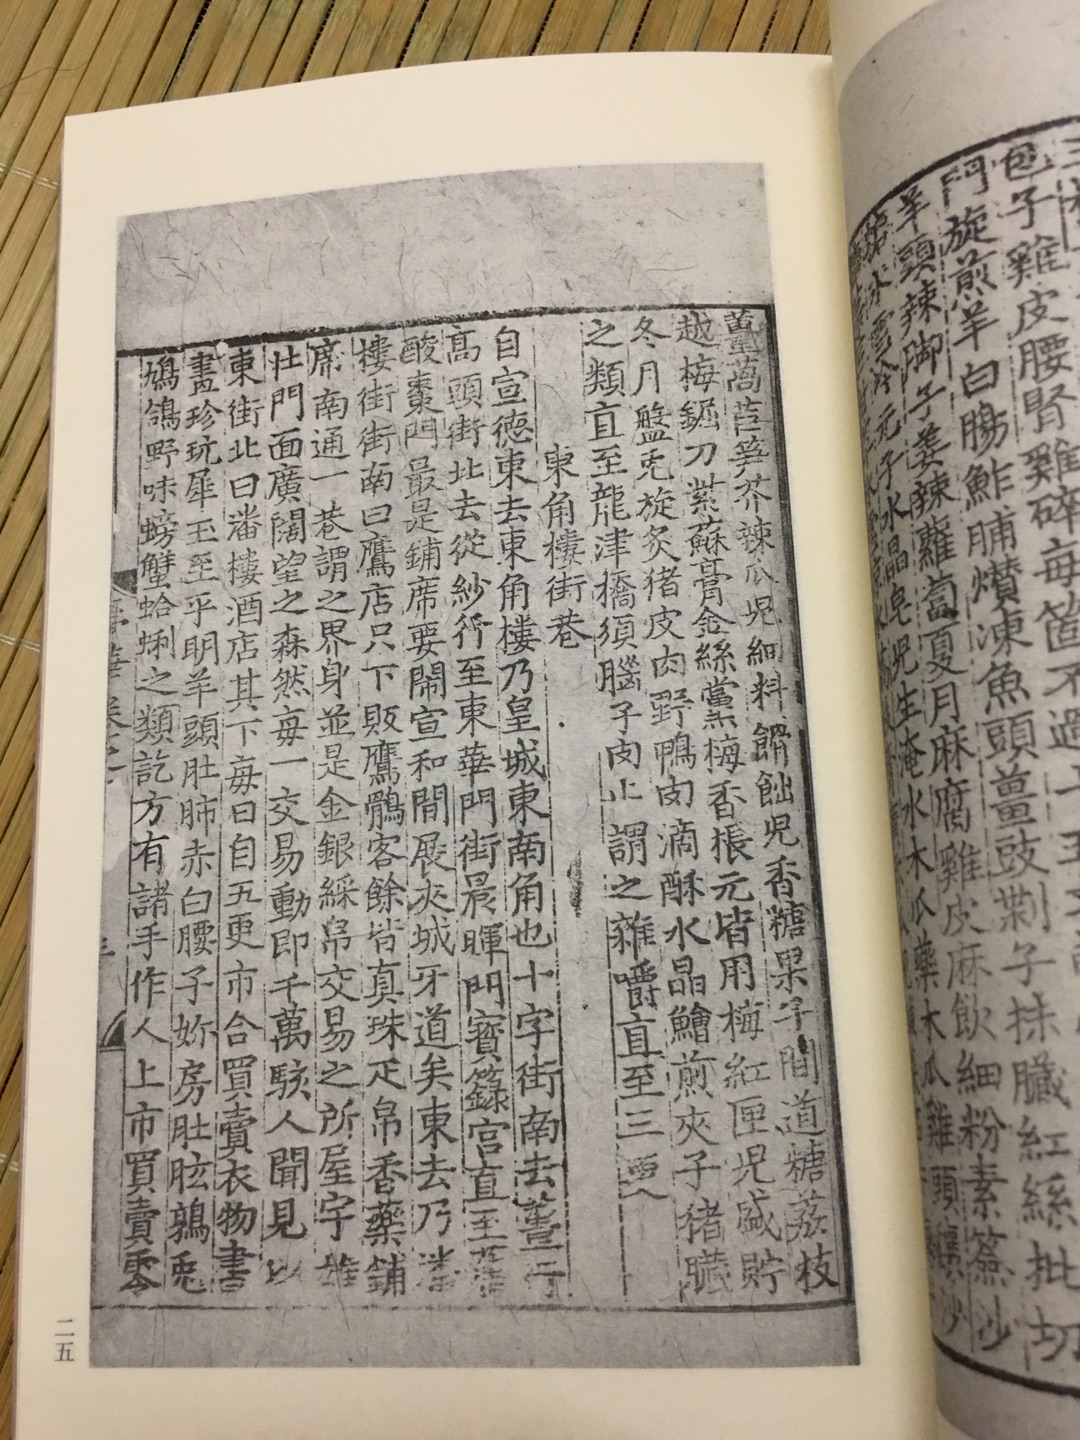 《东京梦华录》是宋代孟元老的笔记体散记文，是一本追述北宋都城东京（今河南开封）城市风俗人情的著作。所记大多是宋徽宗崇宁到宣和（1102—1125）年间北宋都城东京的情况，描绘了这一历史时期居住在东京的上至王公贵族、下及庶民百姓的日常生活情景，是研究北宋都市社会生活、经济文化的一部极其重要的历史文献古籍。此次影印本为国家图书馆藏元刻本。       《三辅黄图》为古代地理书籍，作者佚名。记载秦汉时期三辅（即京兆尹、左冯翊、右扶风）的城池、宫观、陵庙、明堂、辟雍、郊畤等，间涉及周代旧迹。各项建筑，皆指出所在方位。此书条理清晰，为研究关中历史地理尤其是汉都长安zui重要的历史文献。原书一卷，后有二卷、三卷、六卷版本。现今六卷本的格局，学者推测始自元刊本。此次影印本为六卷本，国家图书馆藏元致和元年余氏勤有堂刻本。